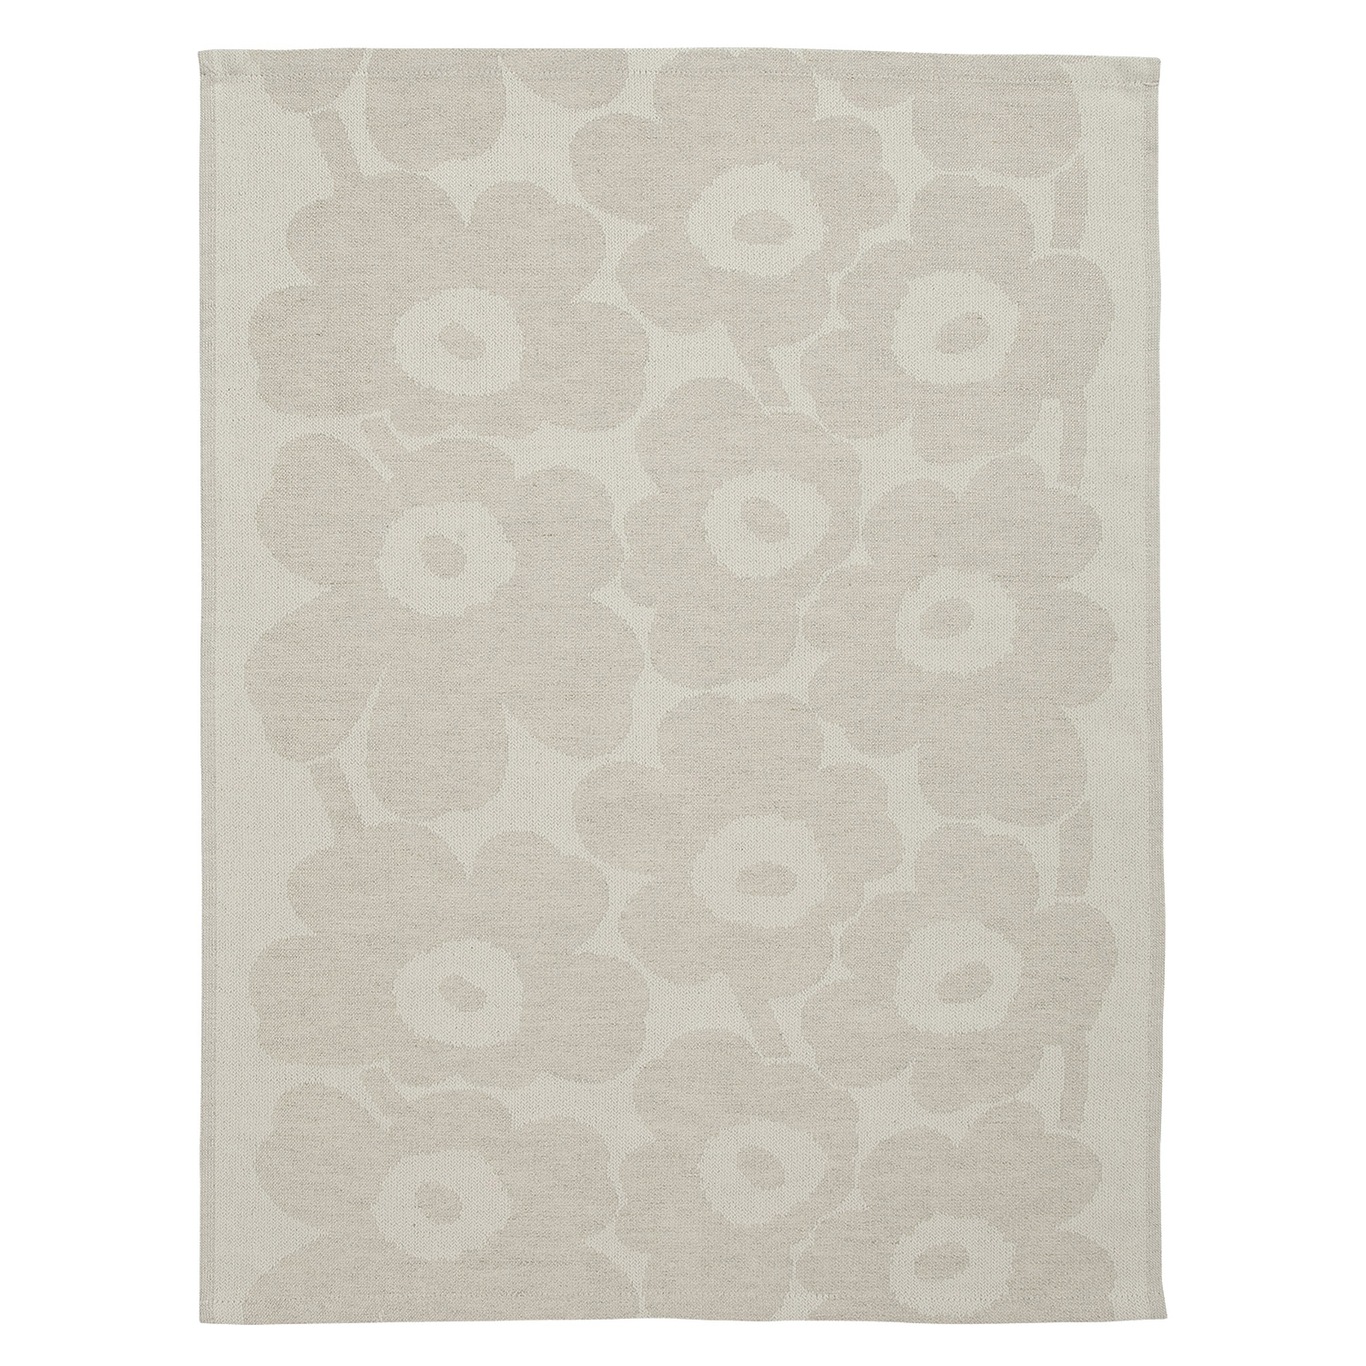 Pieni Unikko Kitchen Towel 50x70 cm, Off-white / Beige